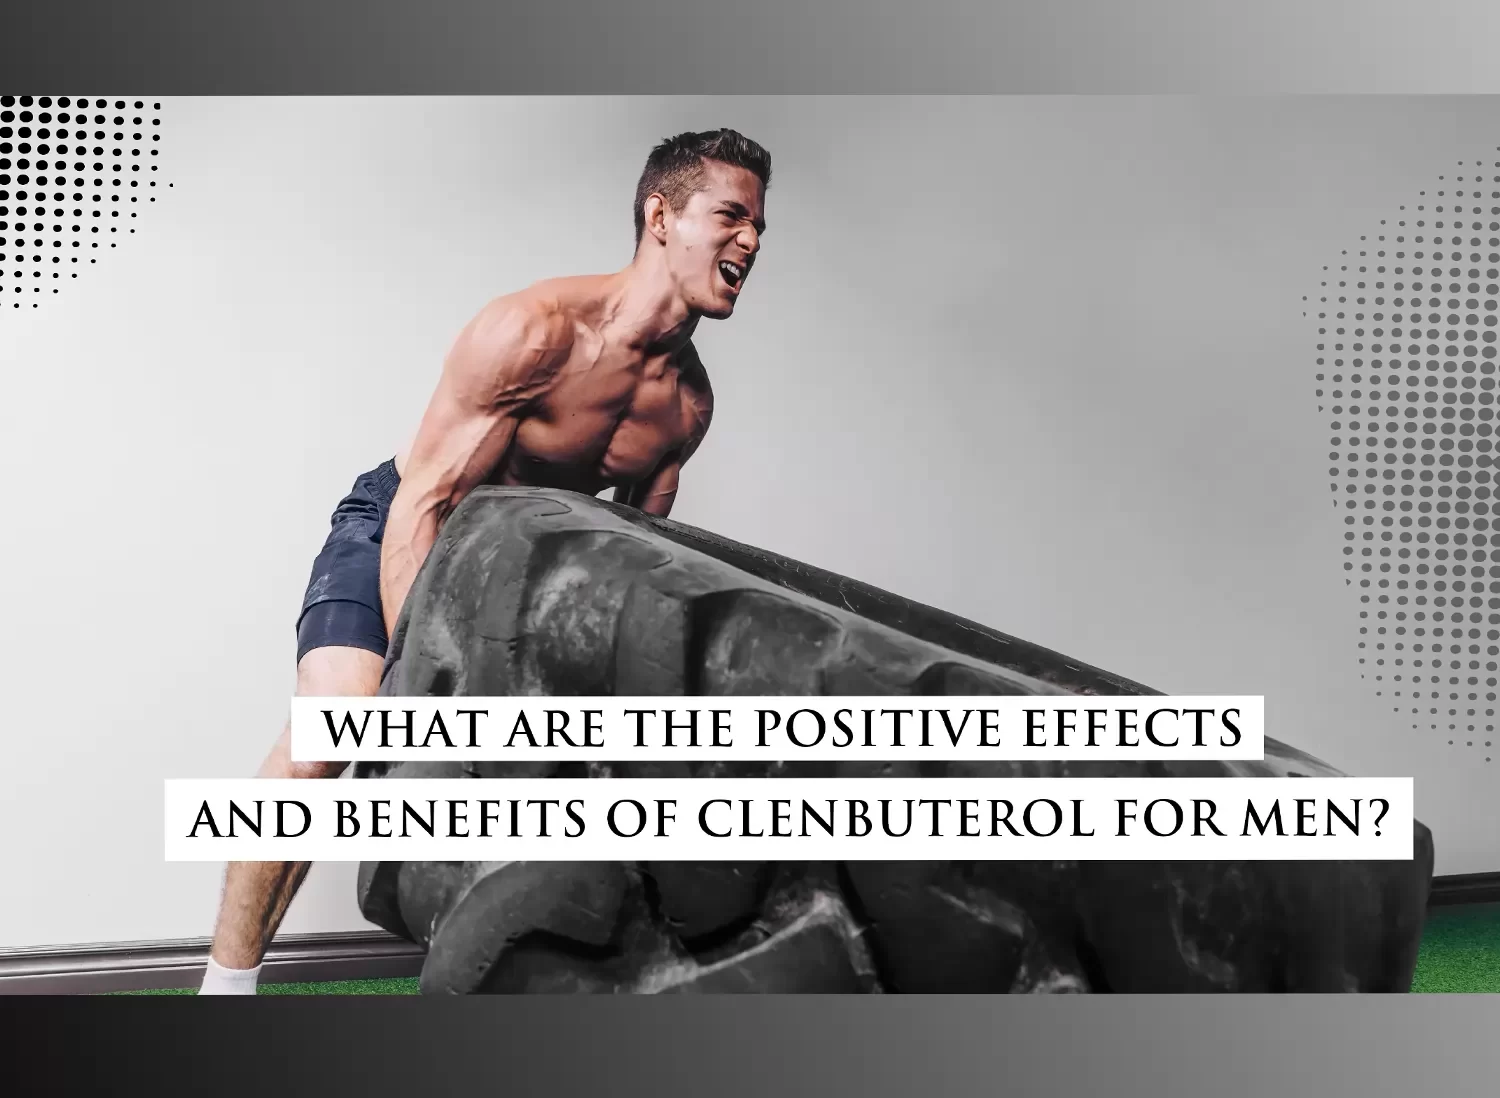 Benefits of Clenbuterol for men